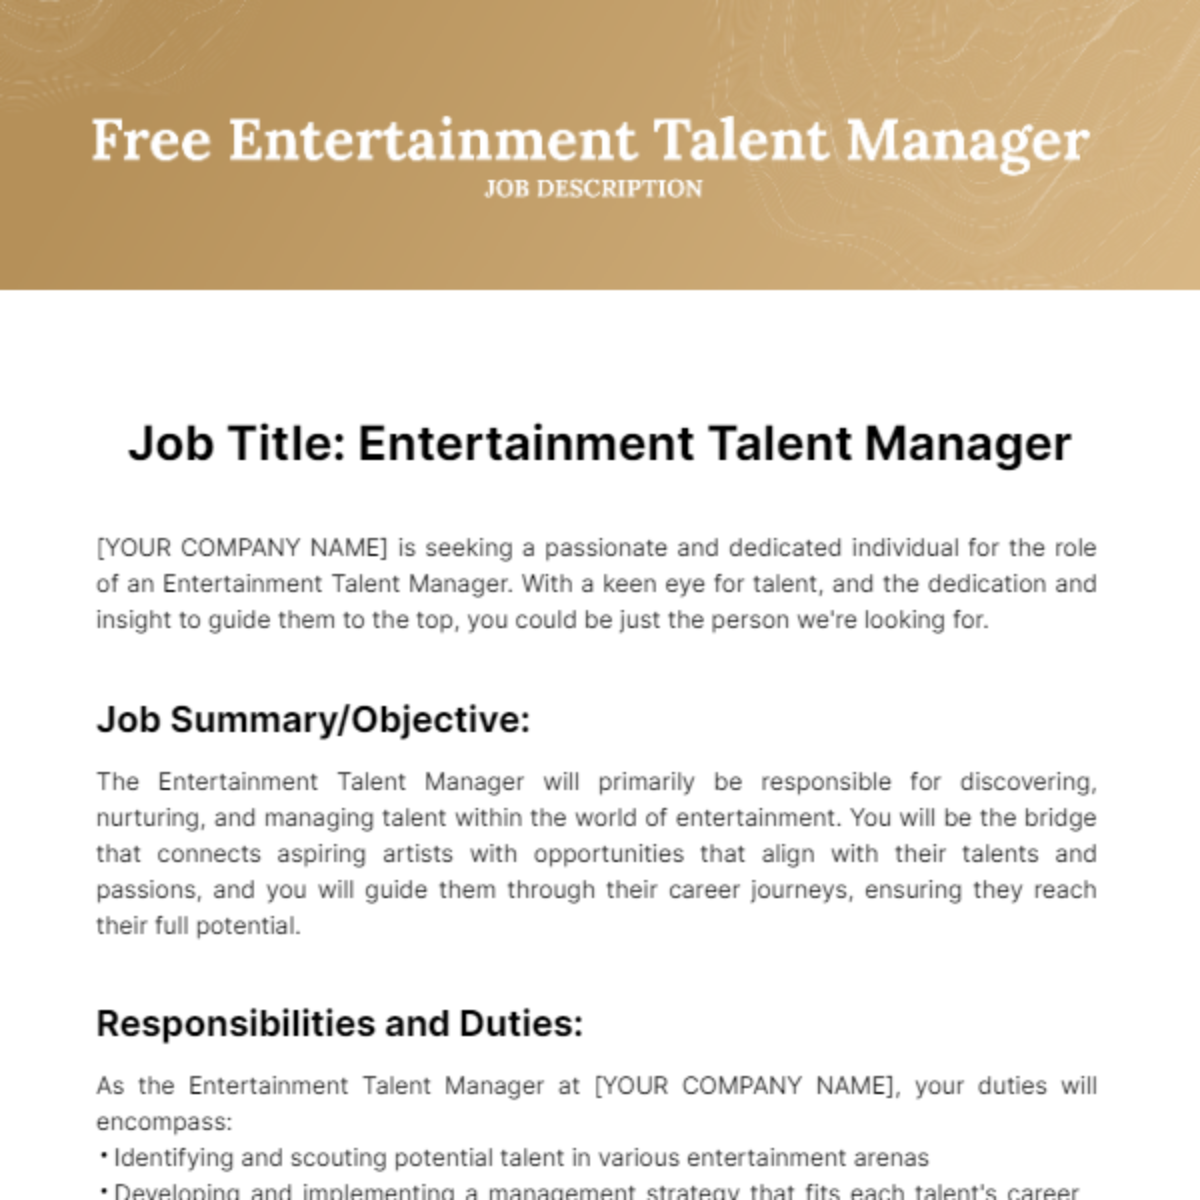 Free Entertainment Talent Manager Job Description Template